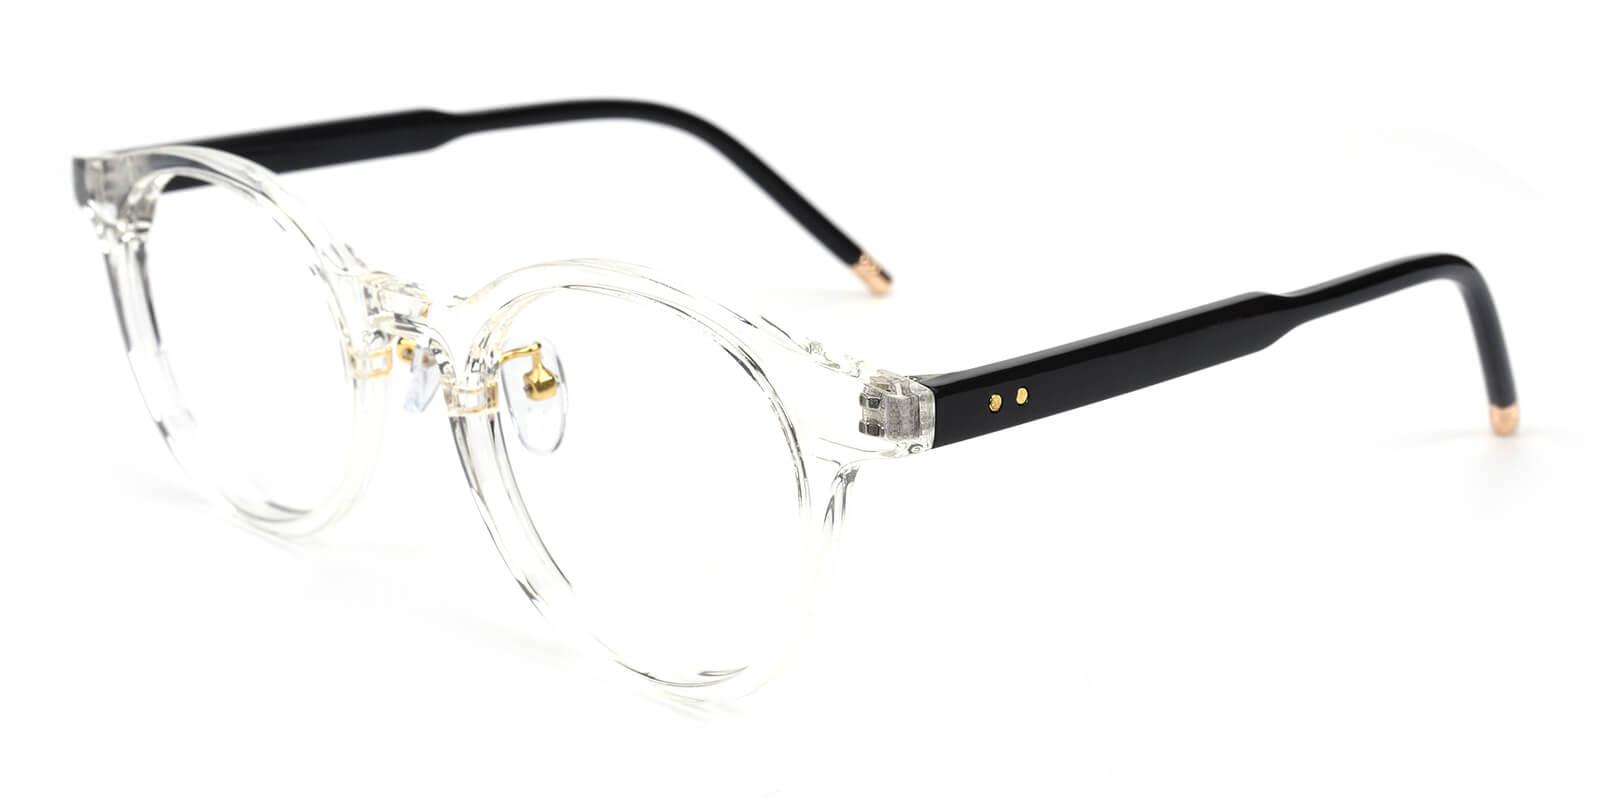 Kron-Translucent-Round-TR-Eyeglasses-detail